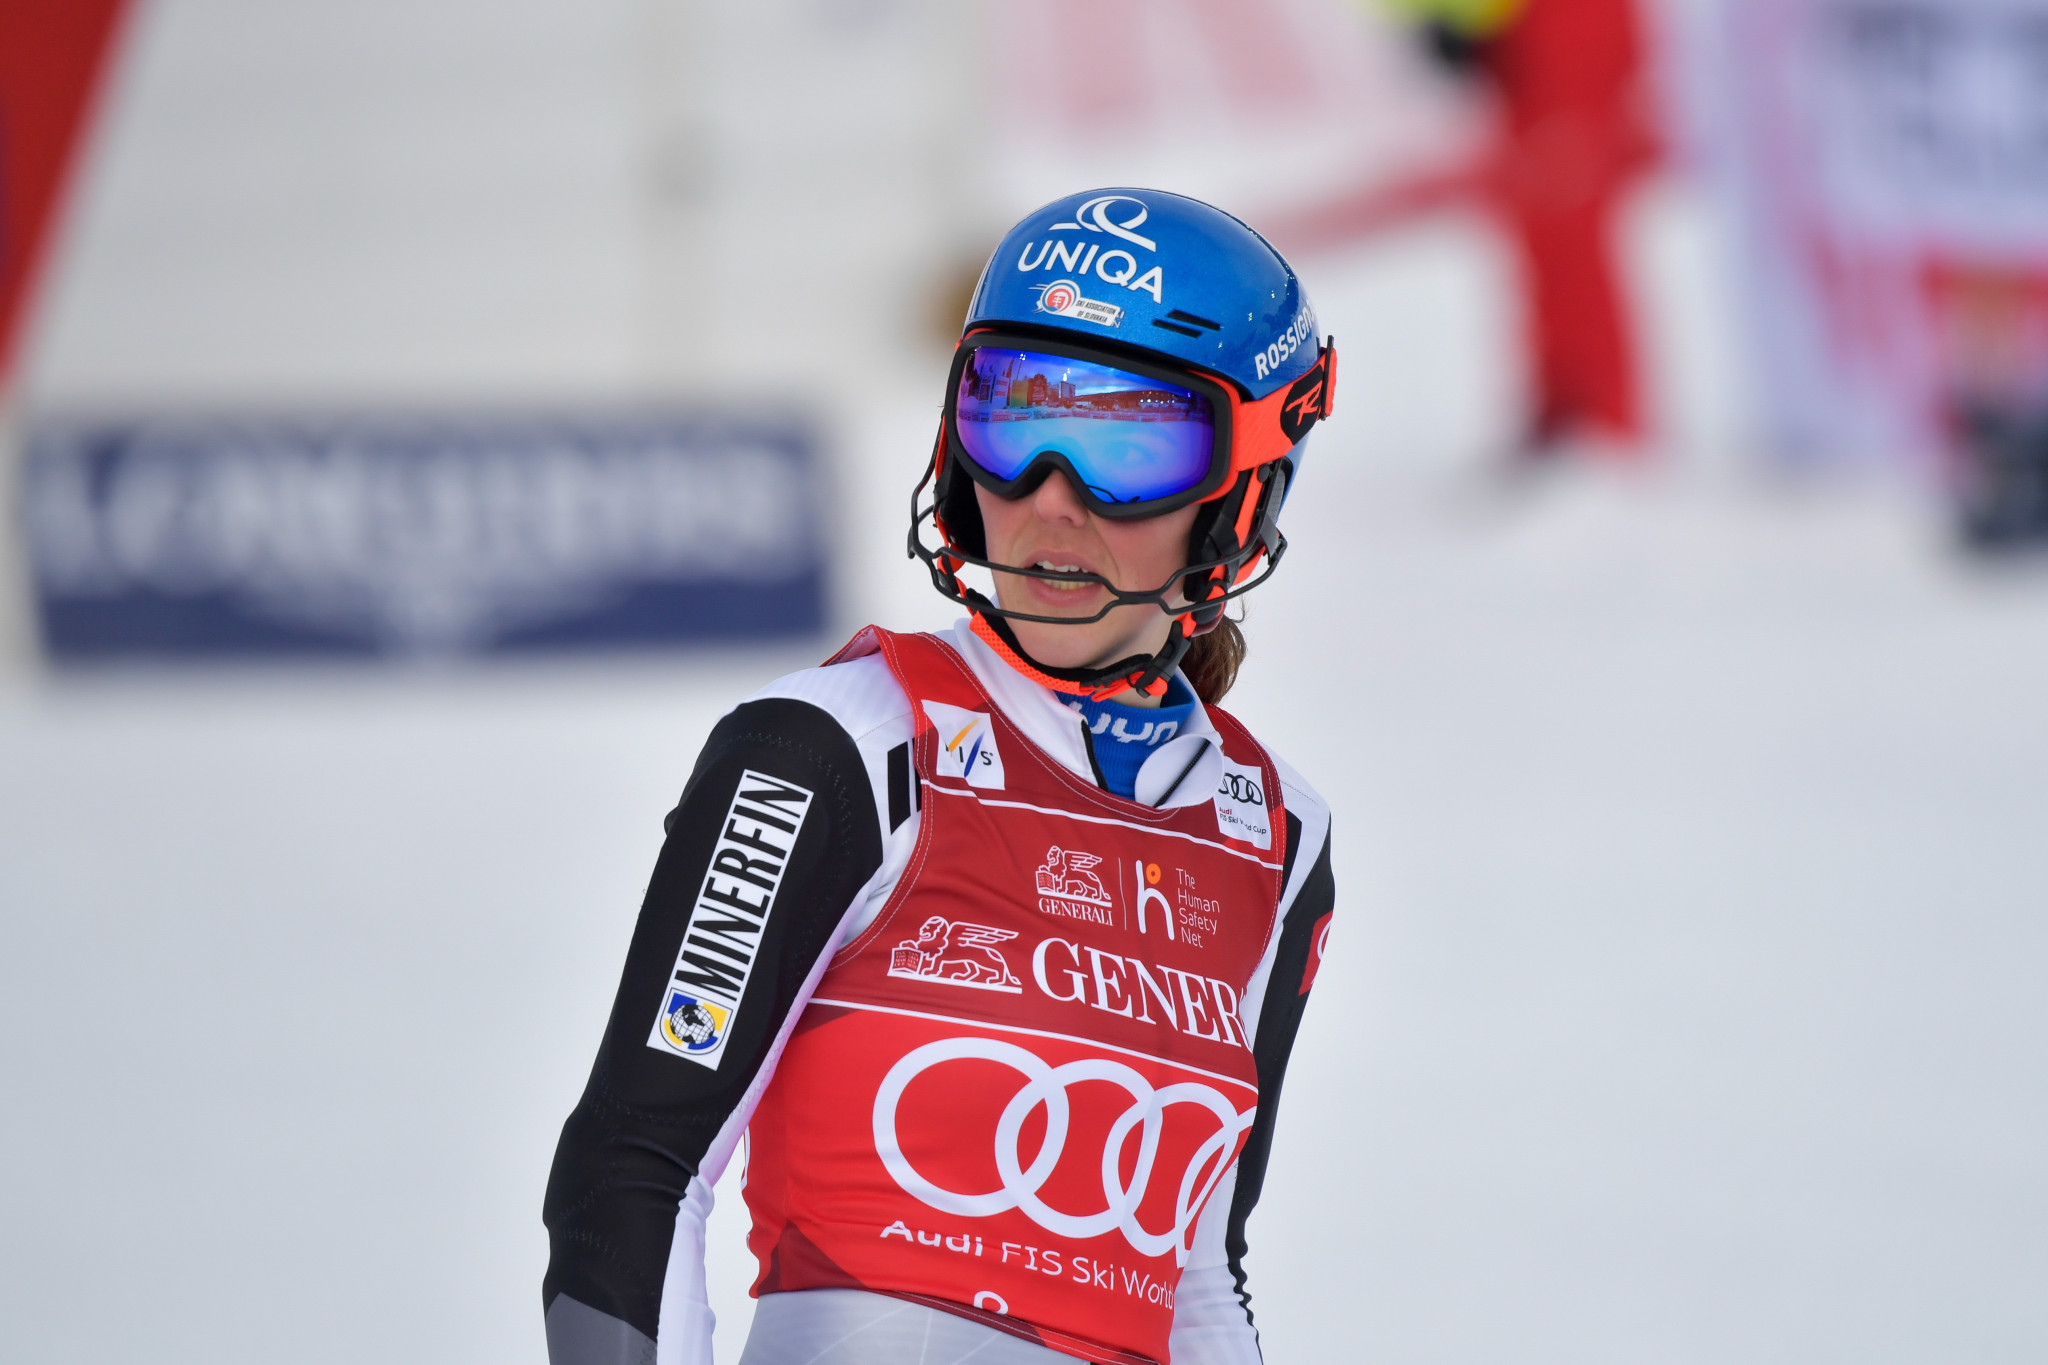 Petra Vlhová, victorieuse hier, a dû se contenter de la deuxième place © Getty Images